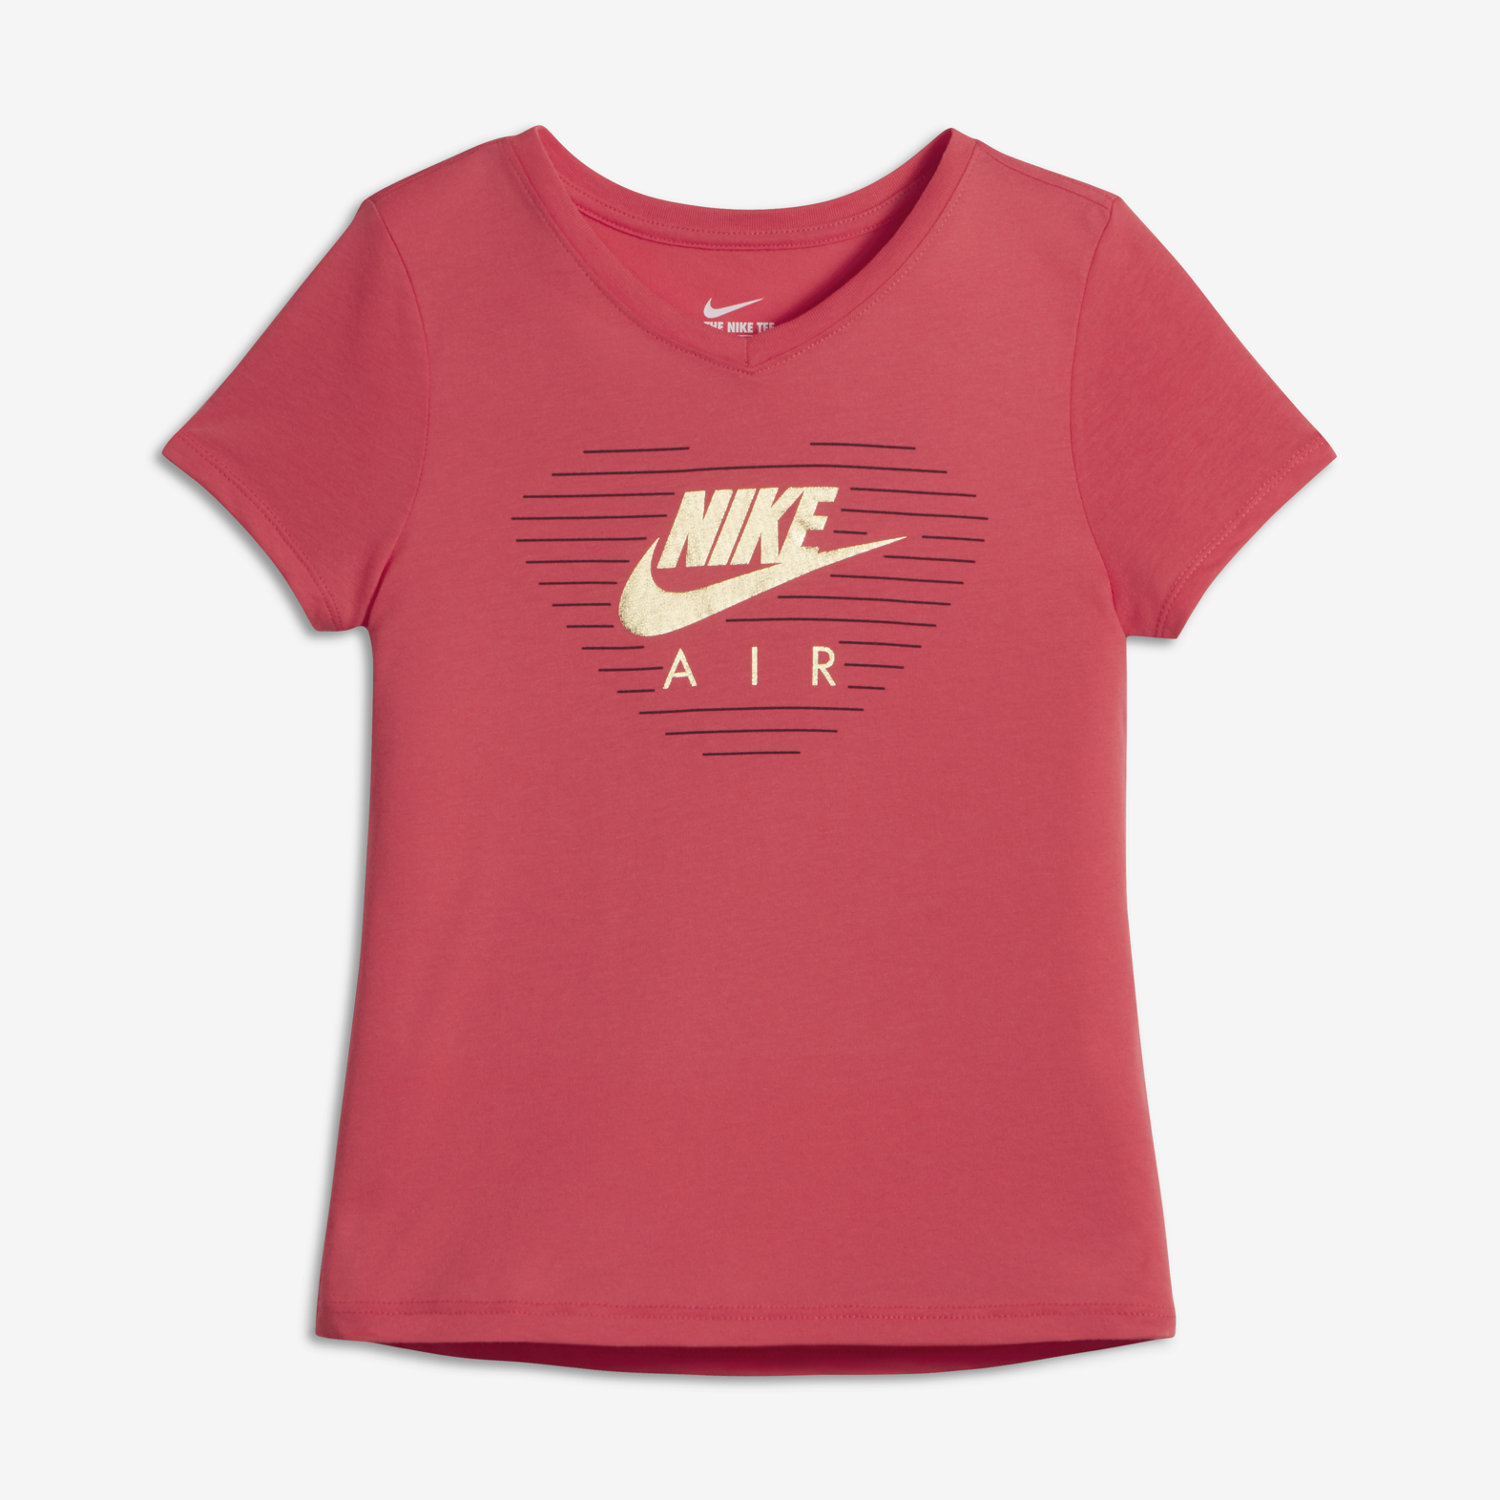 Nike Sneaker Love - Older Kids' (Girls') Training T-Shirt